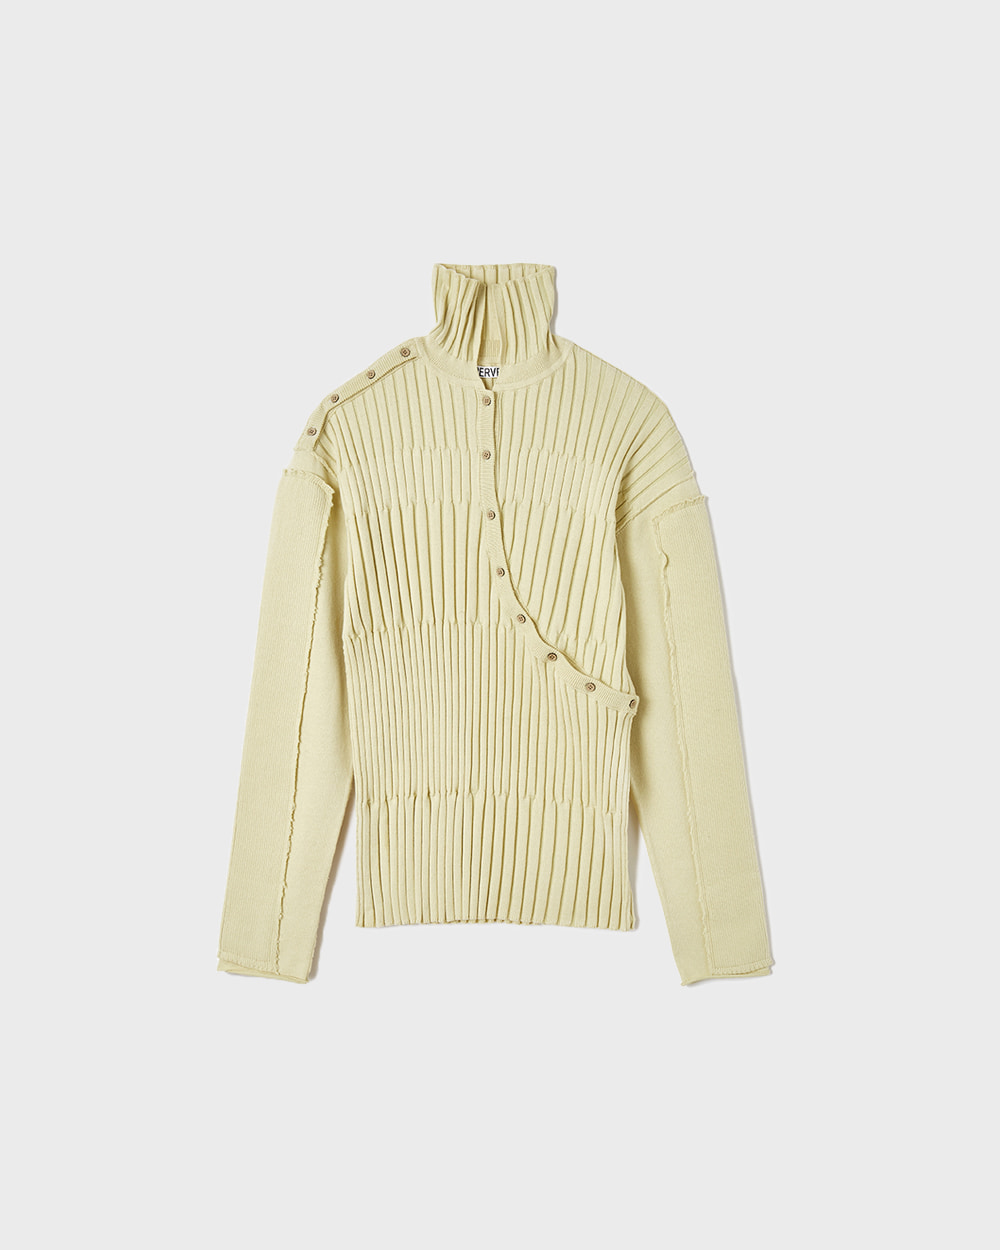 Re-Cotton Multi Rib Sweater (Cream)